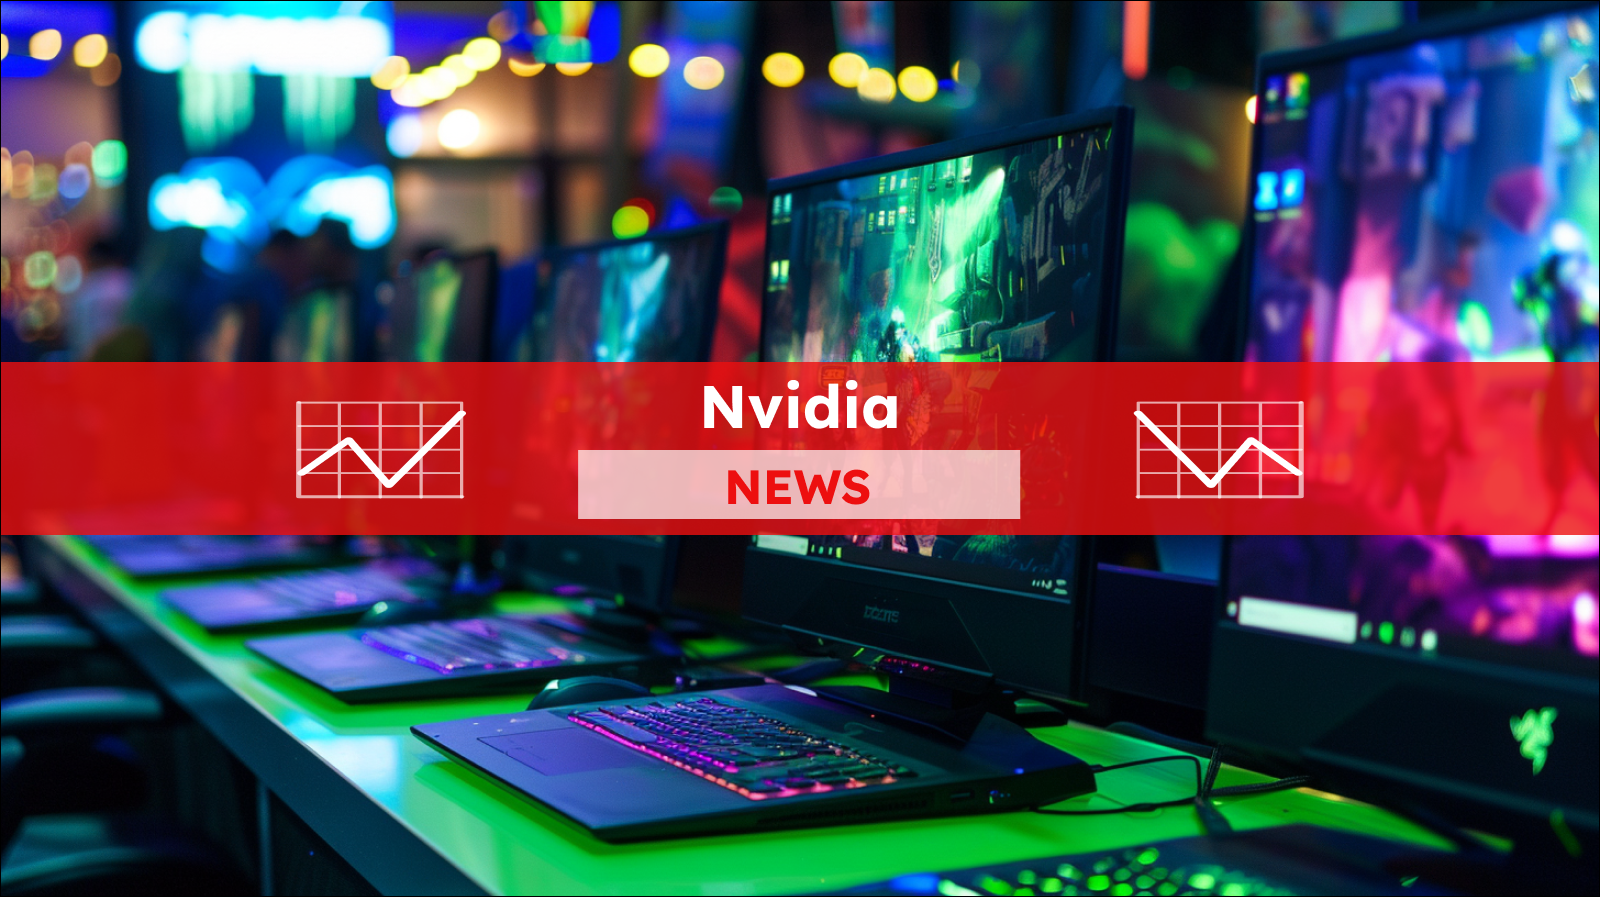 Auf einer hellgrünen Oberfläche sind eine Reihe von Gaming-Computer, mit einer lebendigen animierten Szene auf dem Bildschirm,  mit einem Nvidia NEWS-Banner